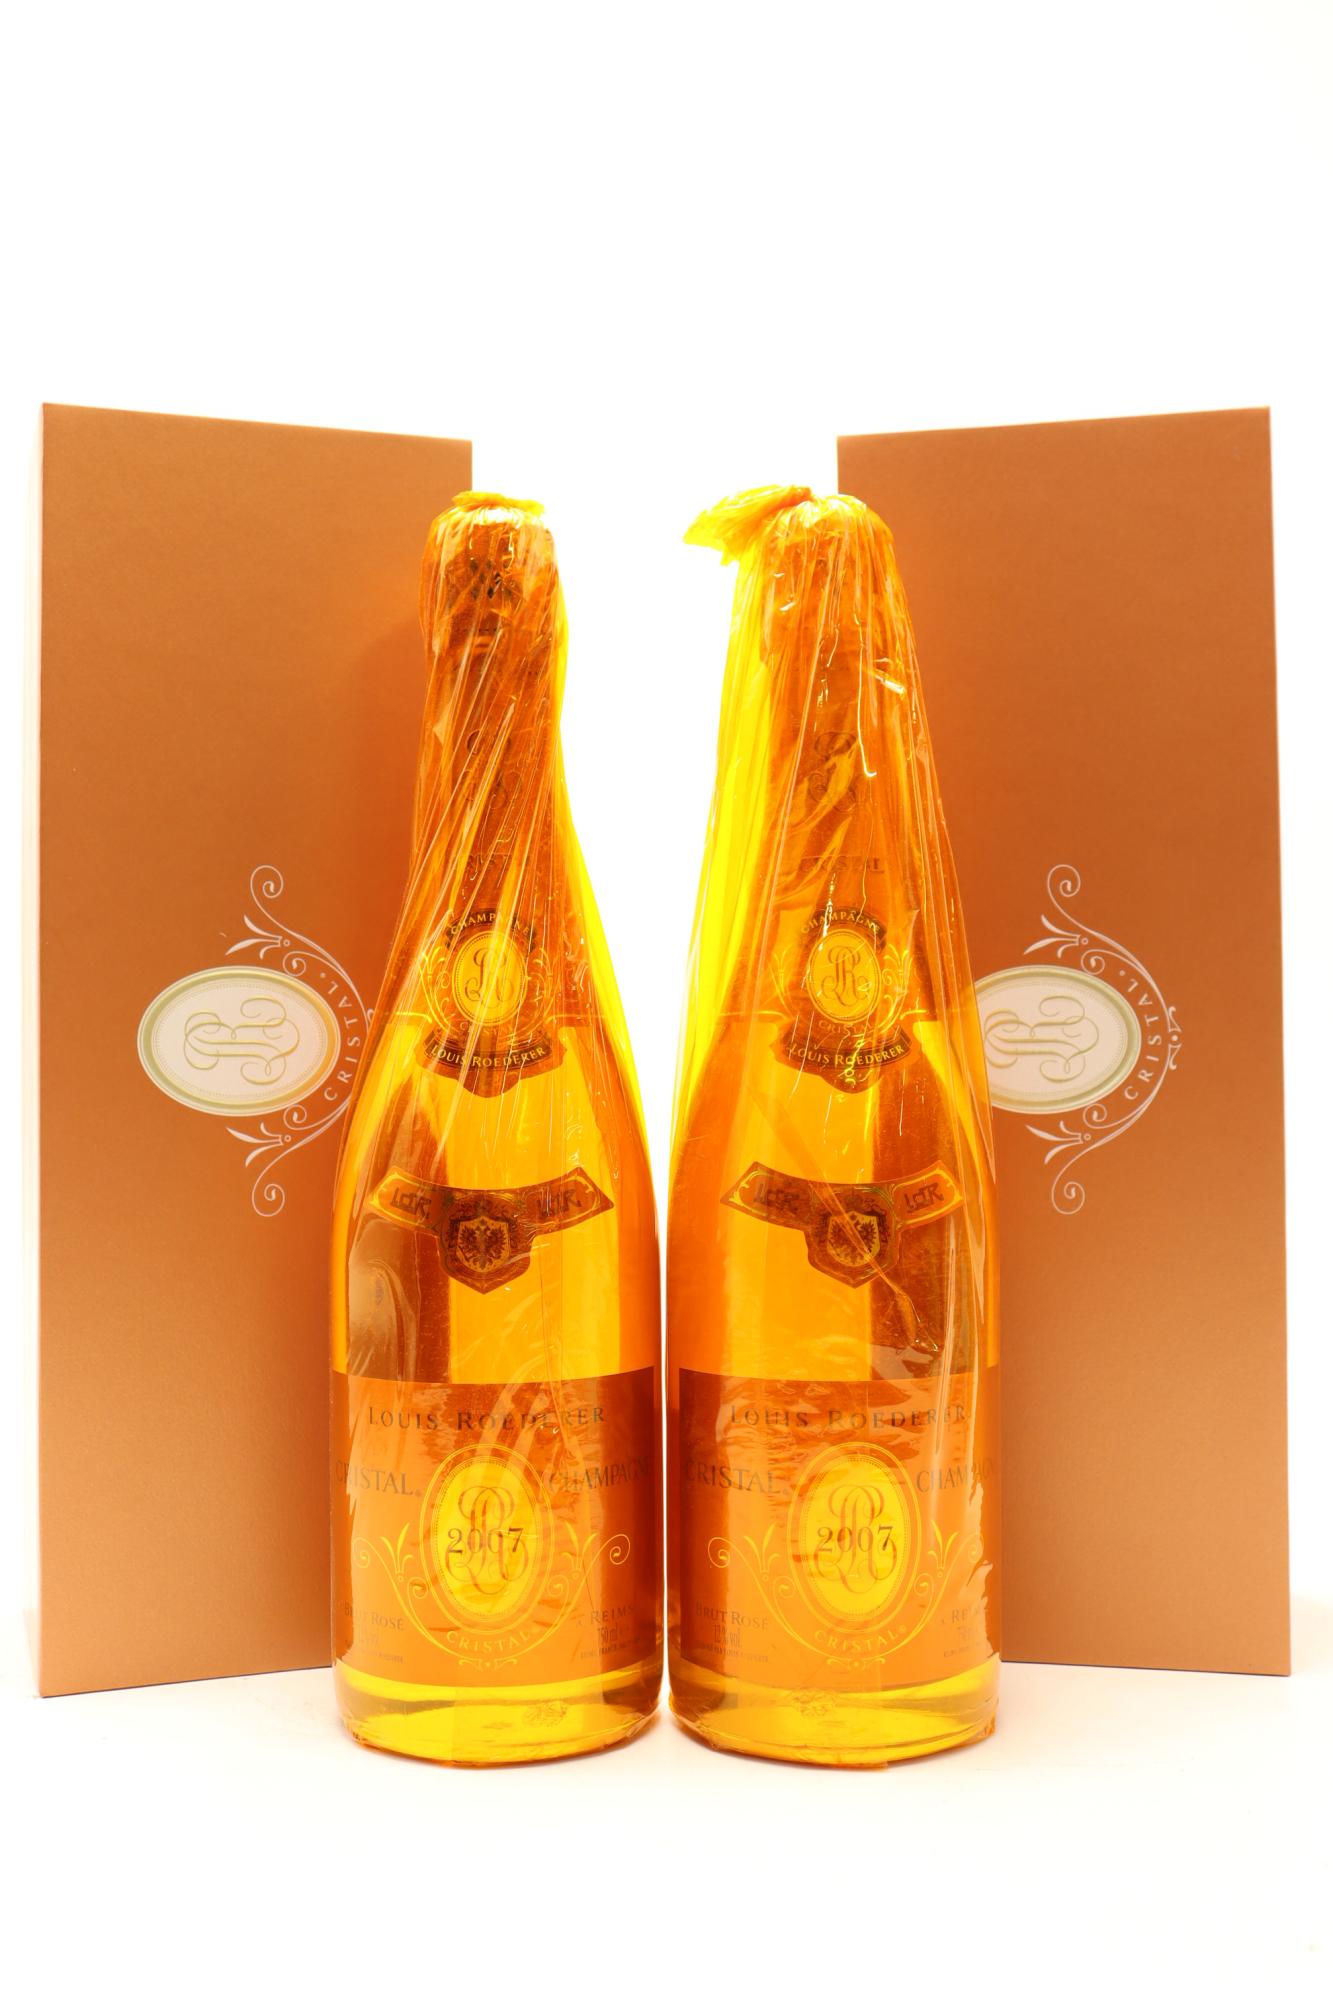 2) 2007 Louis Roederer Cristal Brut Rose Millesime, Champagne [WE97]